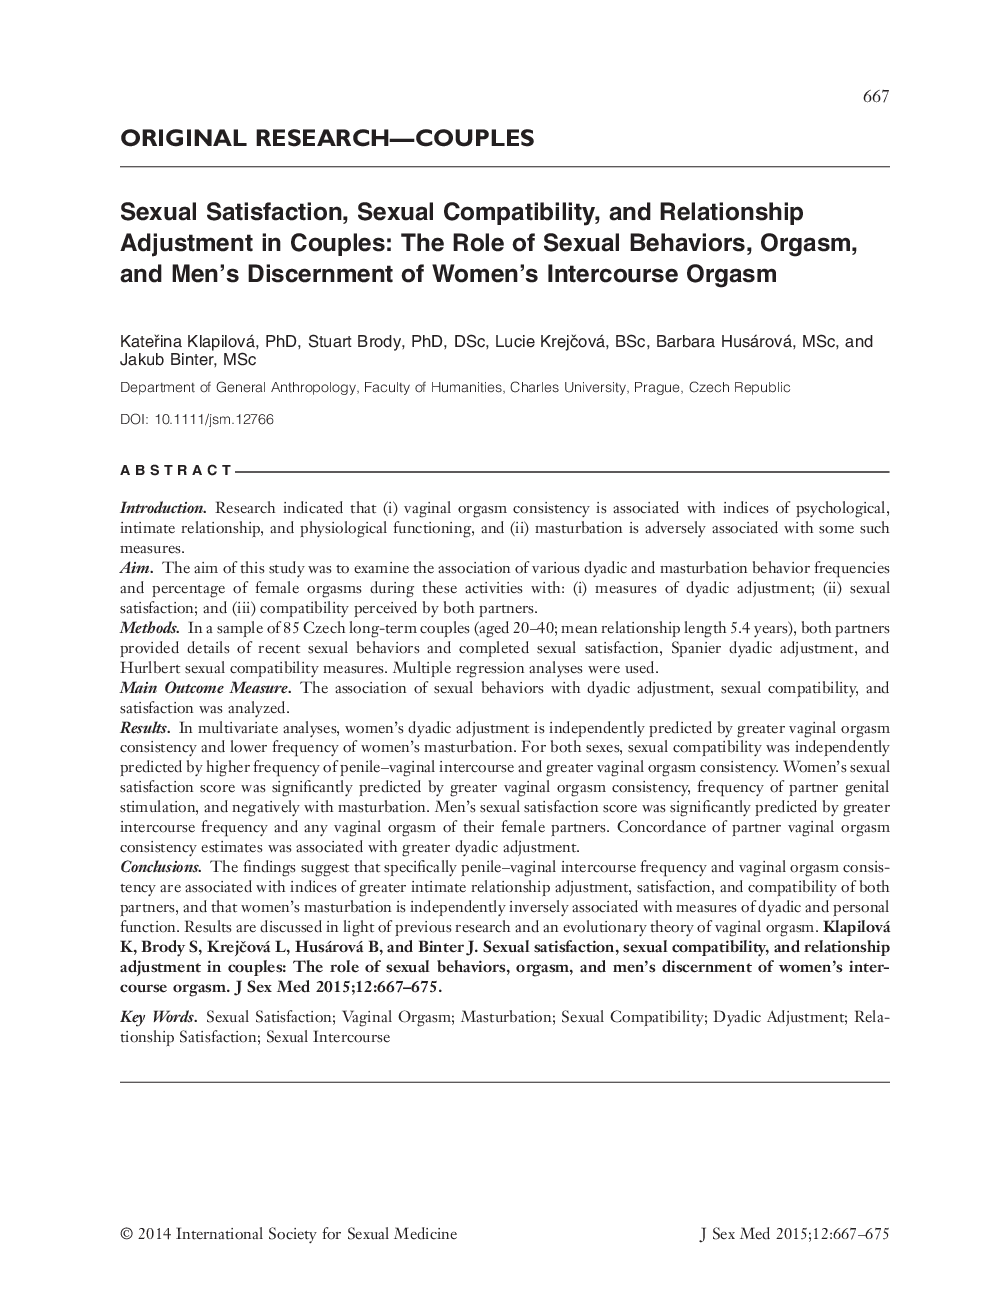 رضایت جنسی، سازگاری جنسی و تعدیل رابطه در زوج ها: نقش رفتارهای جنسی، ارگاسم و تشخیص مردان از ارگاسم رابطه جنسی زن 